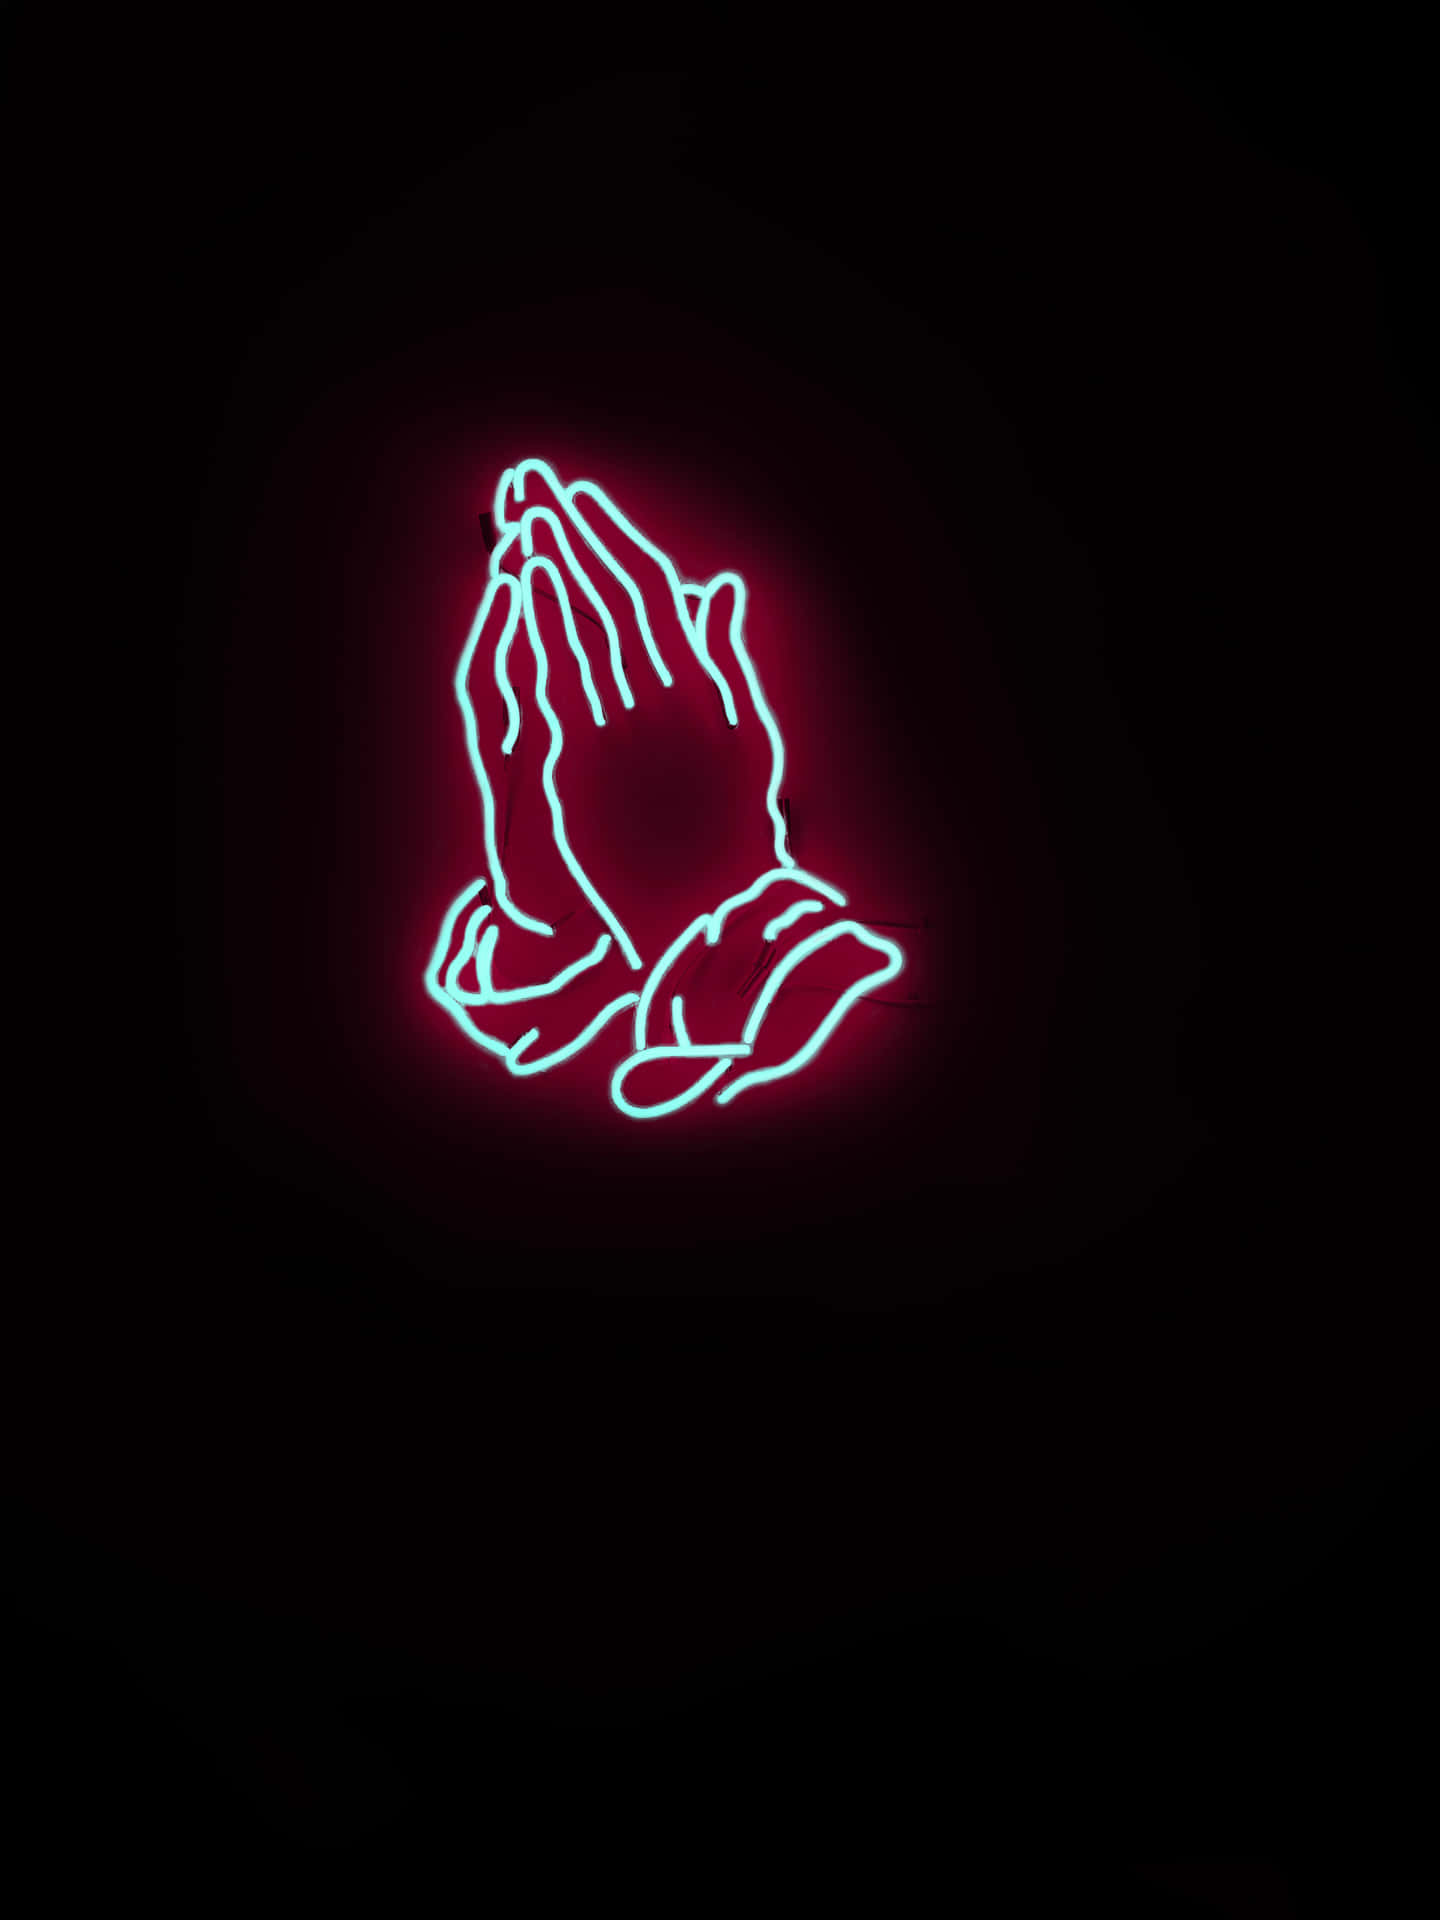 Neon Praying Hands Logo Wallpaper